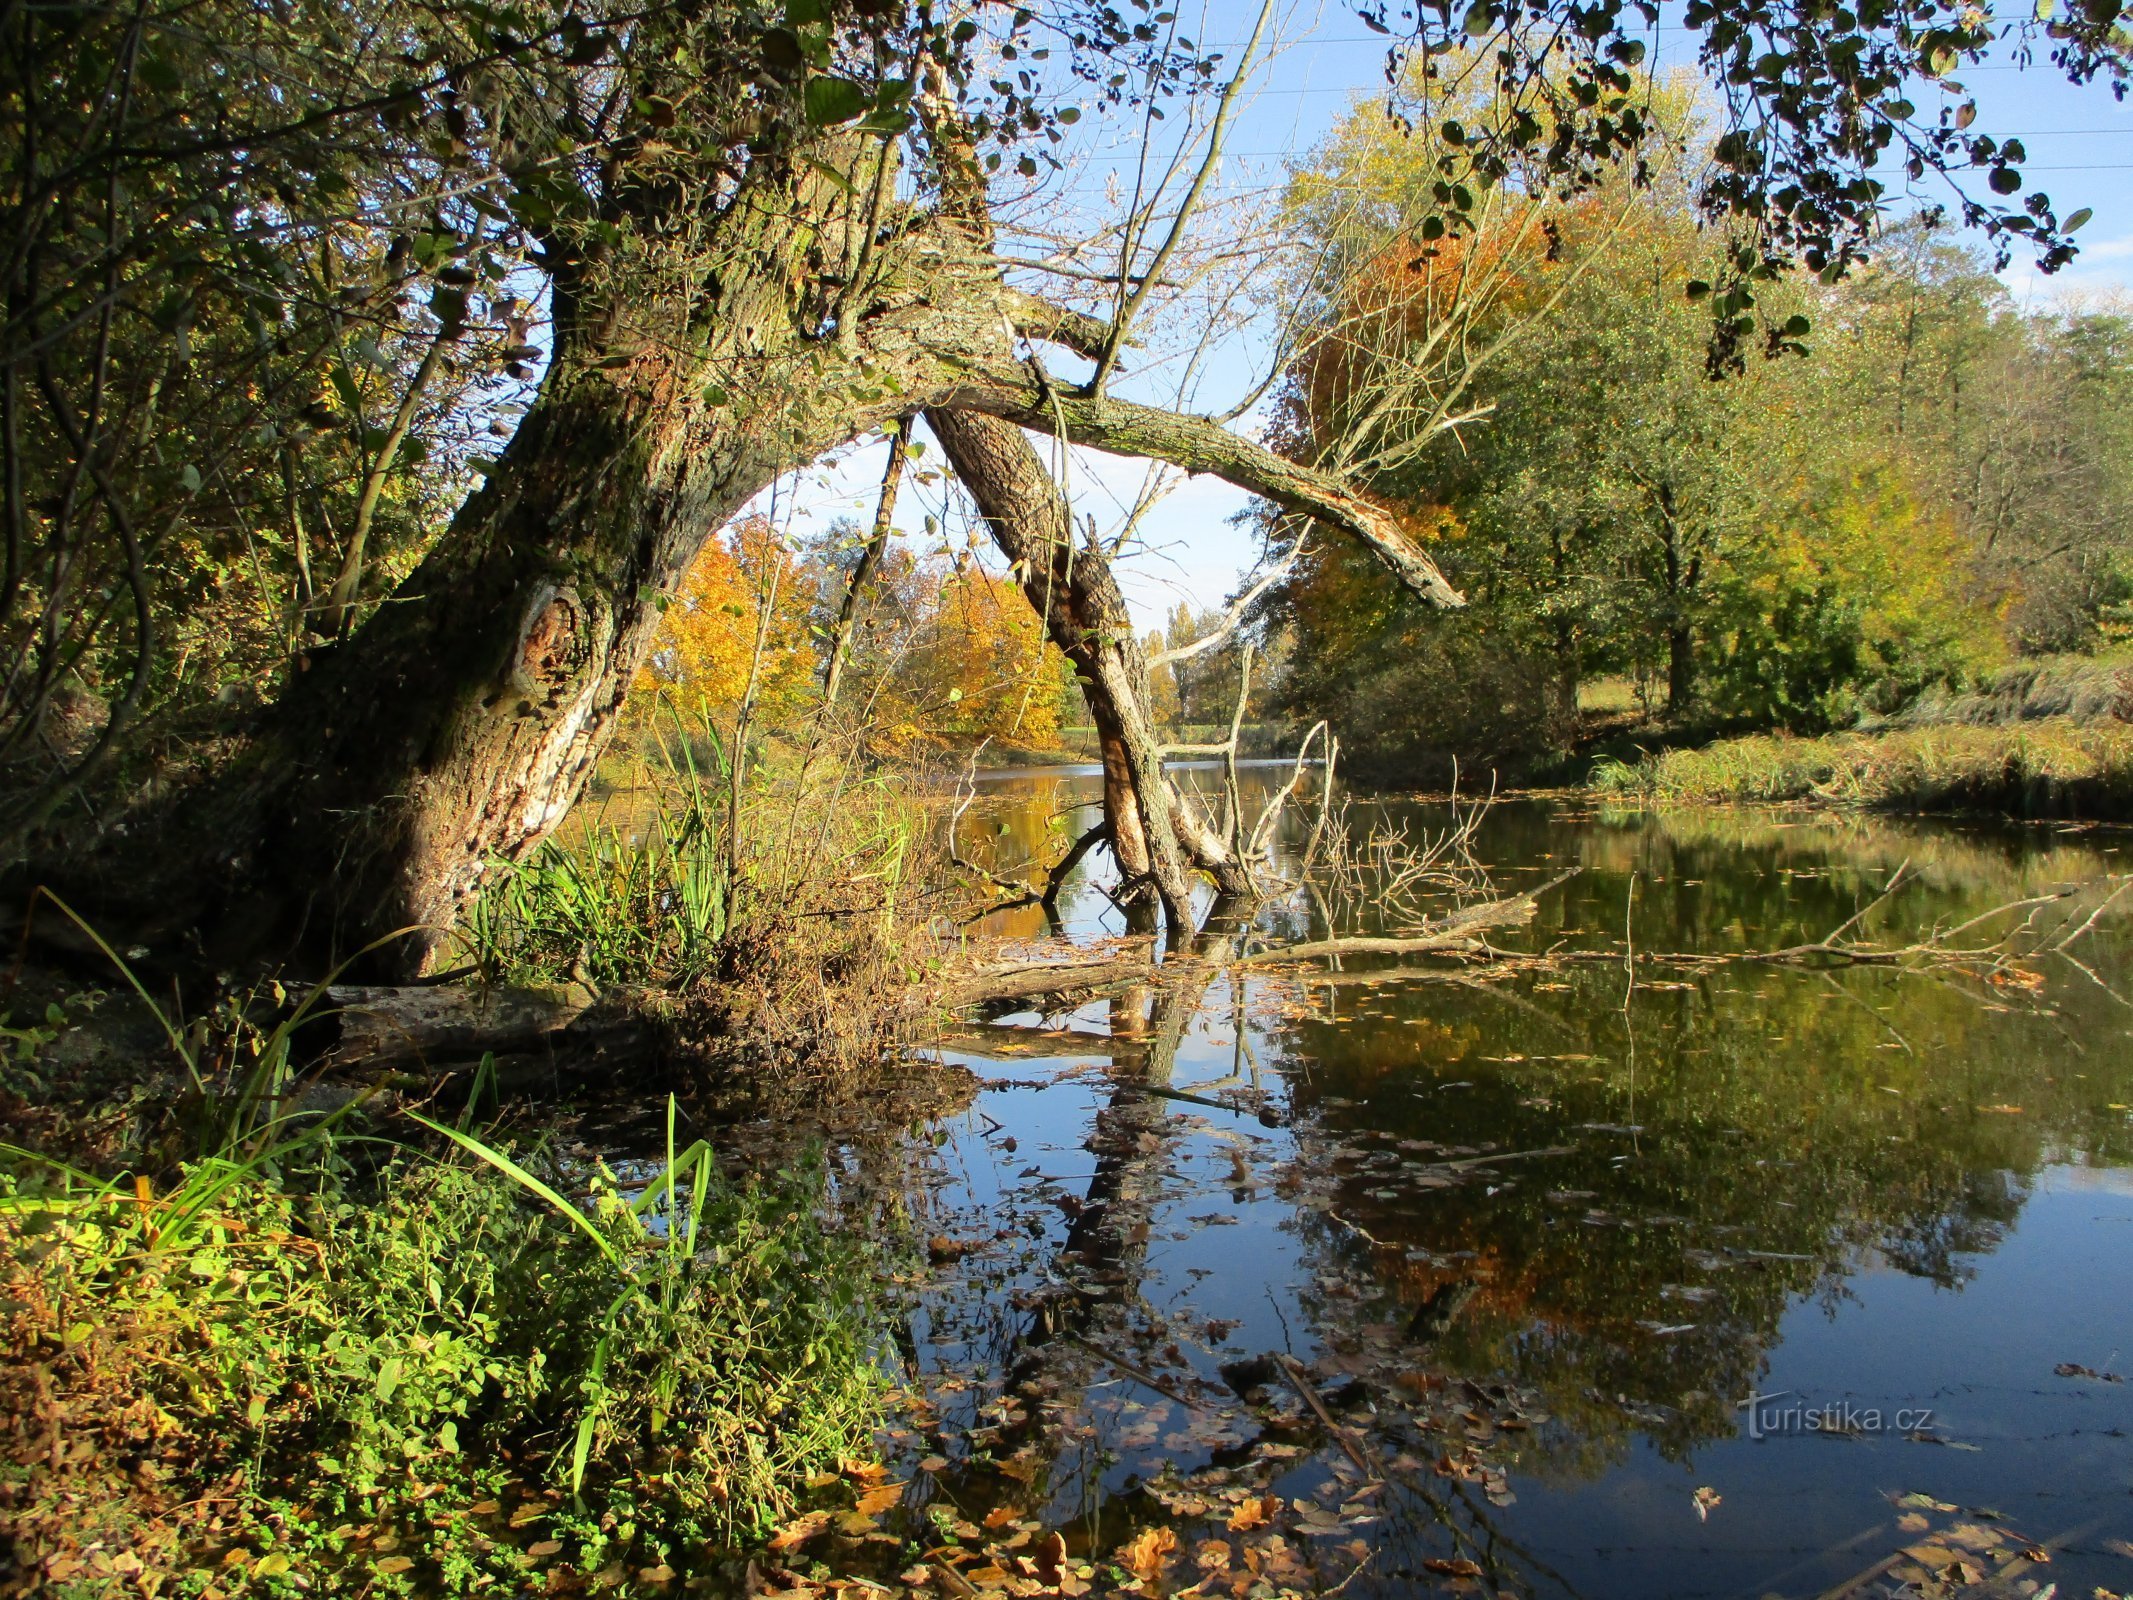 Parské jezero (Hradec Králové, 18.10.2019. maj XNUMX)